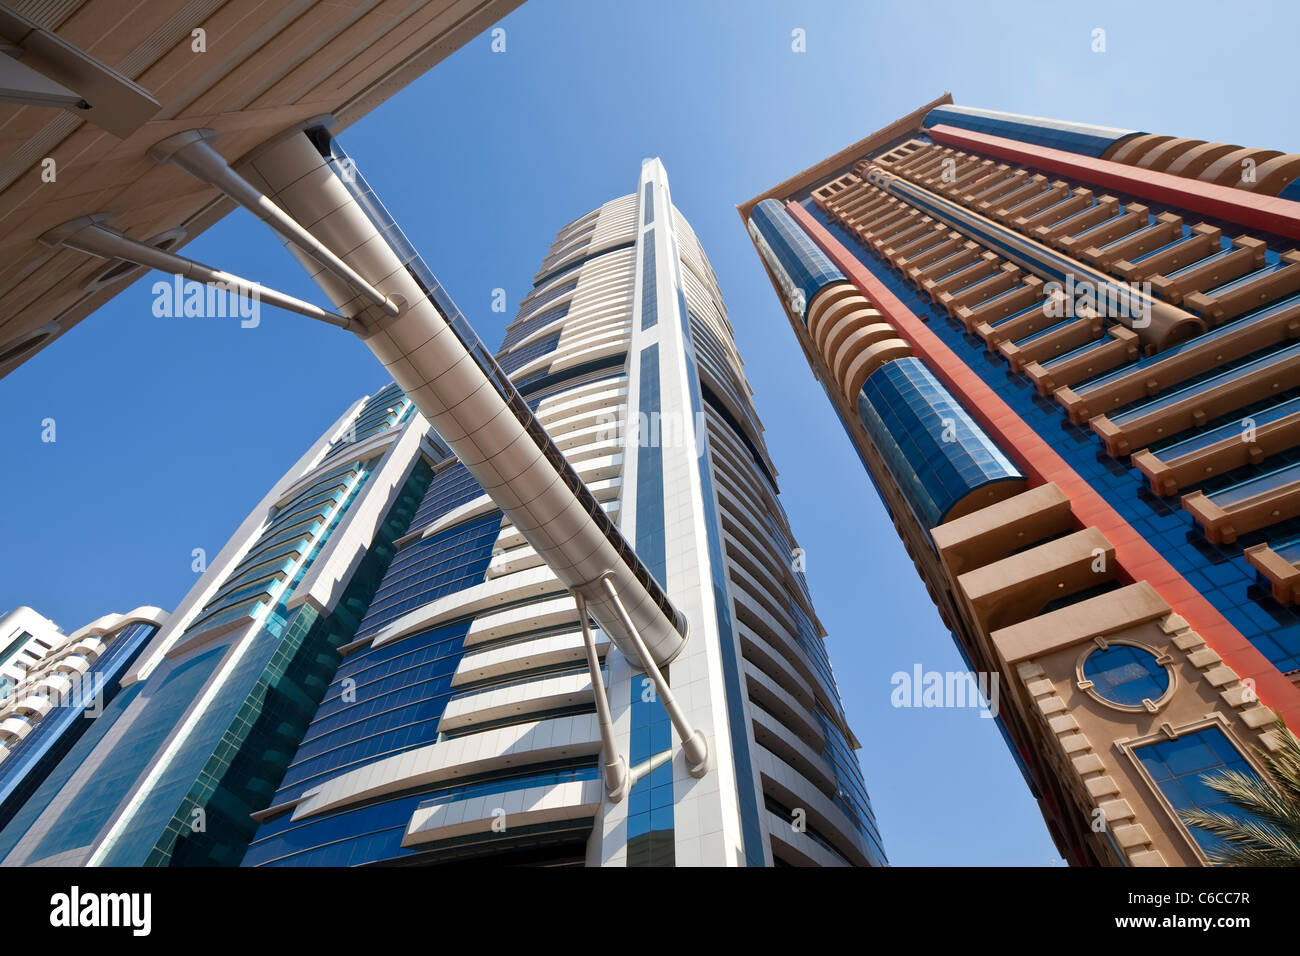 Basso angolo di visione dell'architettura moderna lungo la Sheikh Zayed Road, Dubai, Emirati Arabi Uniti Foto Stock